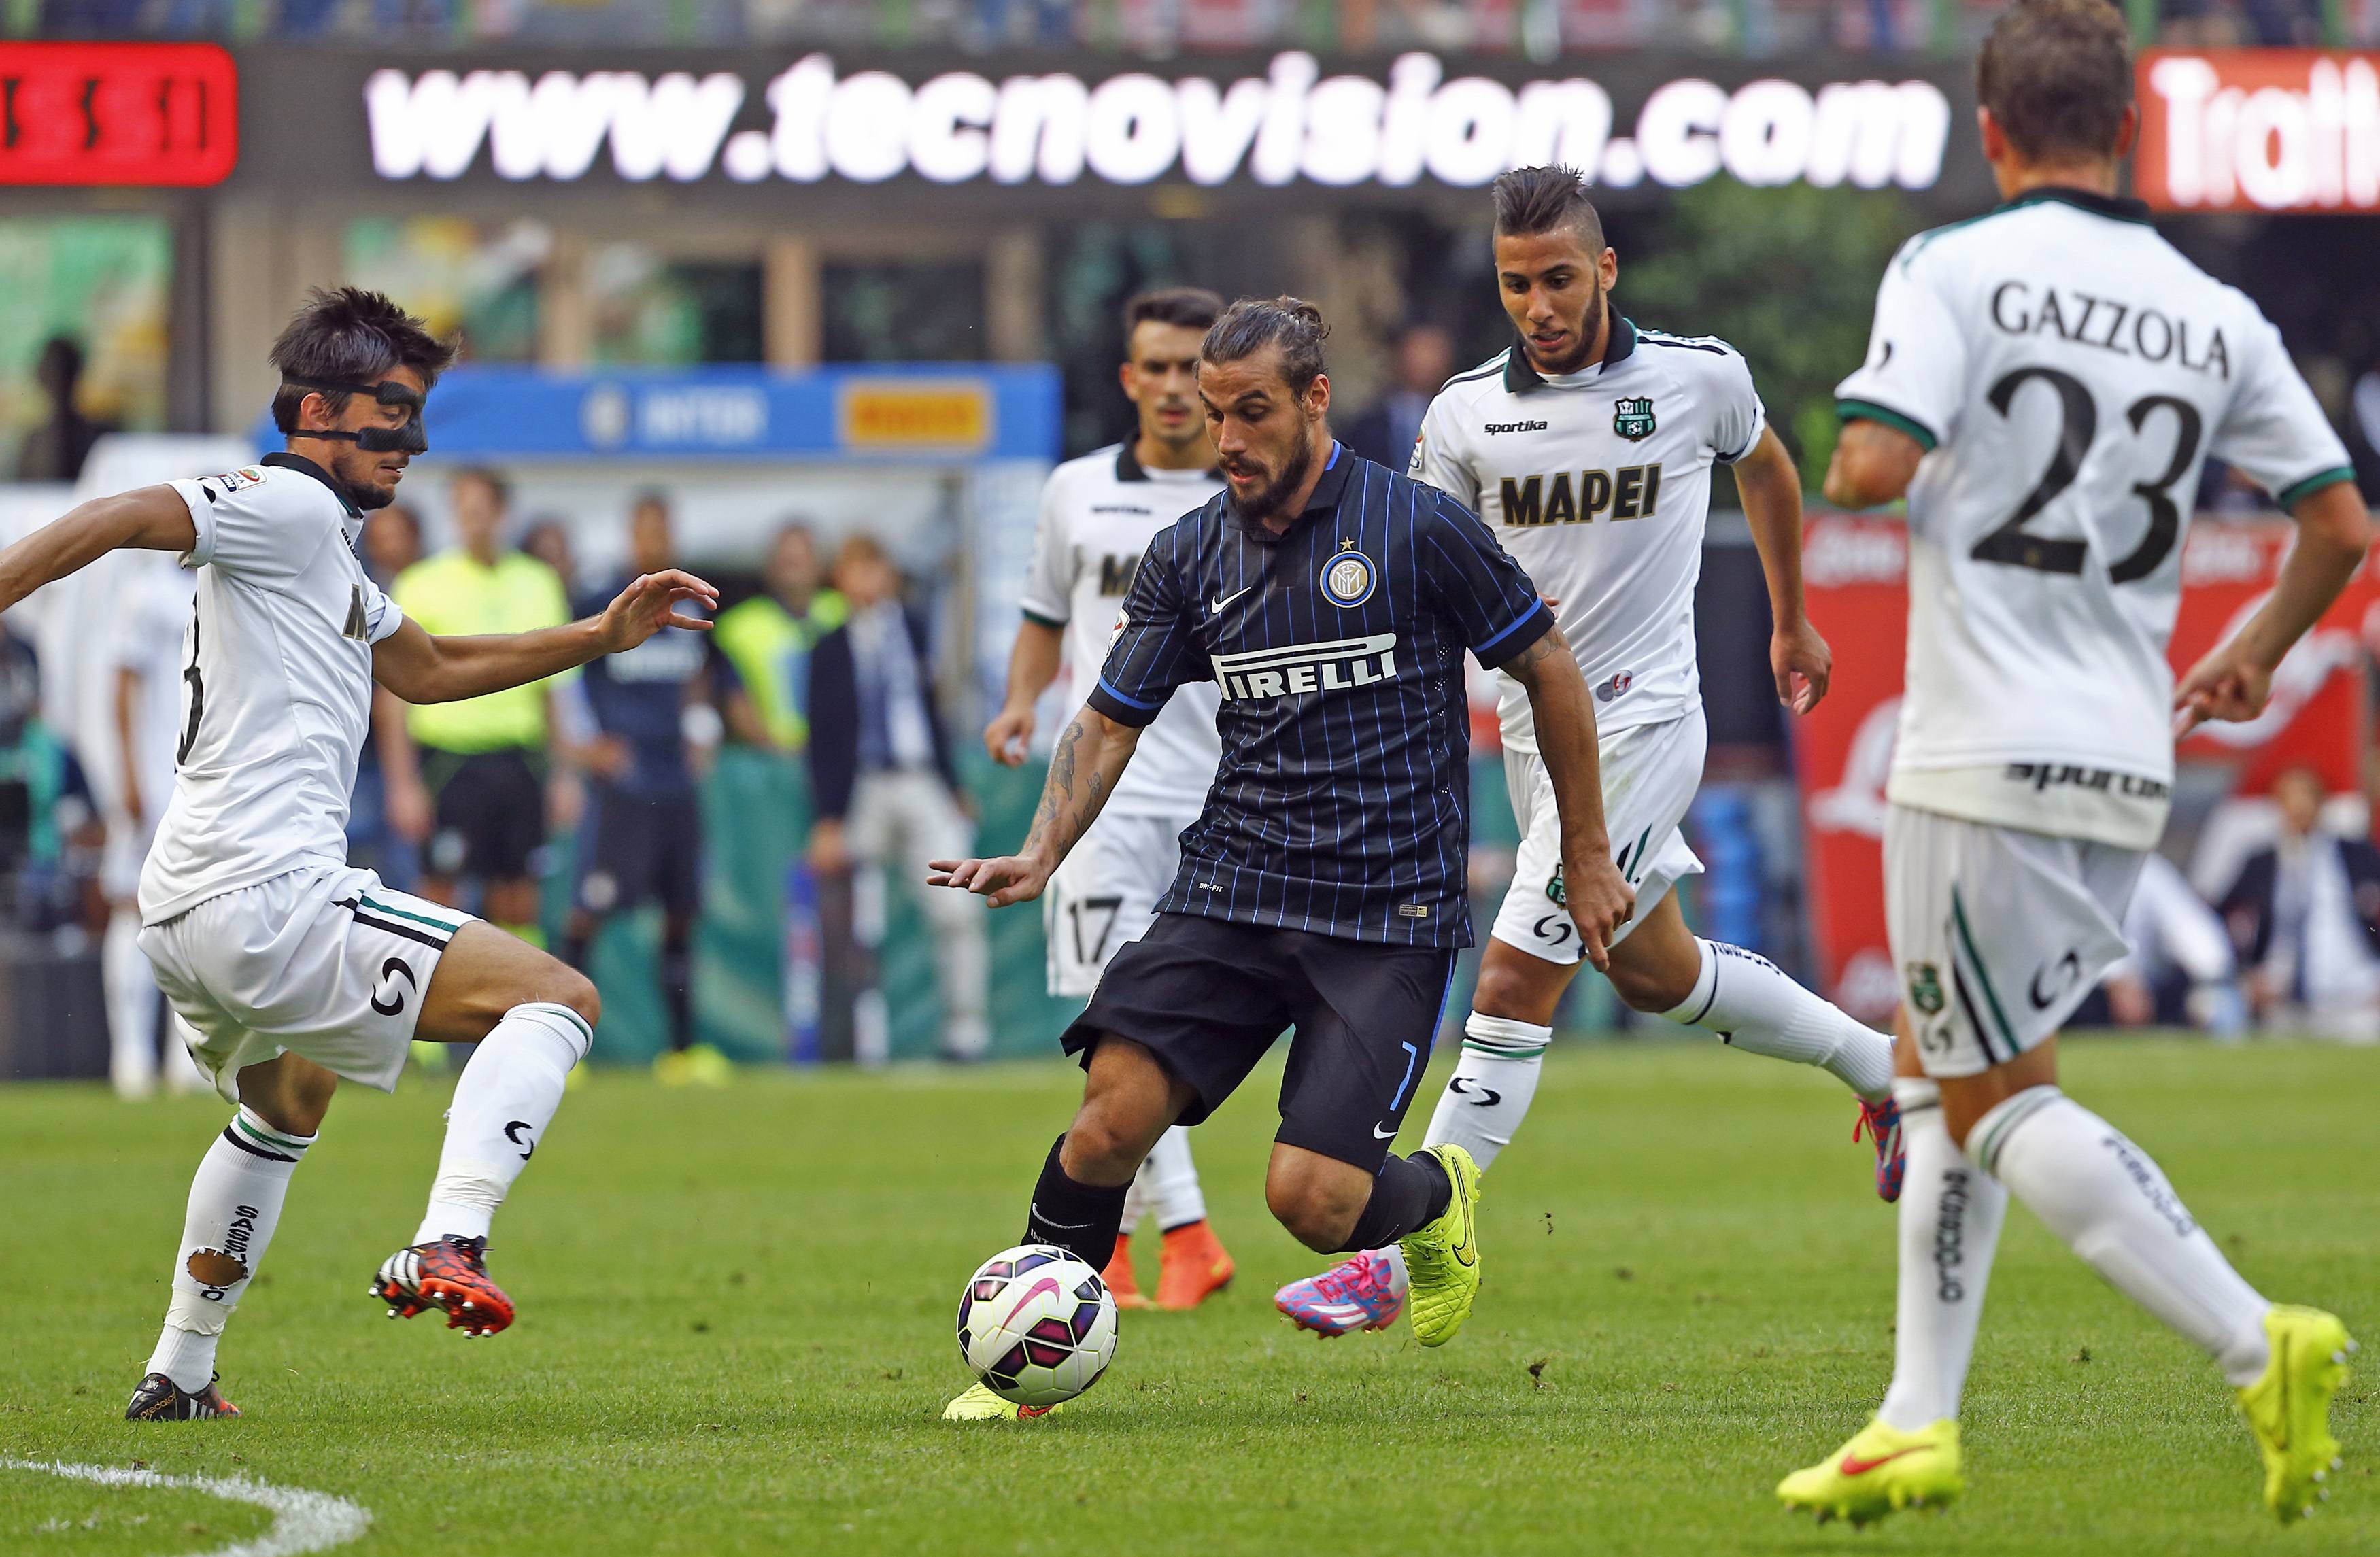 FCIN: Matri Injury Heats Up Genoa’s Osvaldo Pursuit